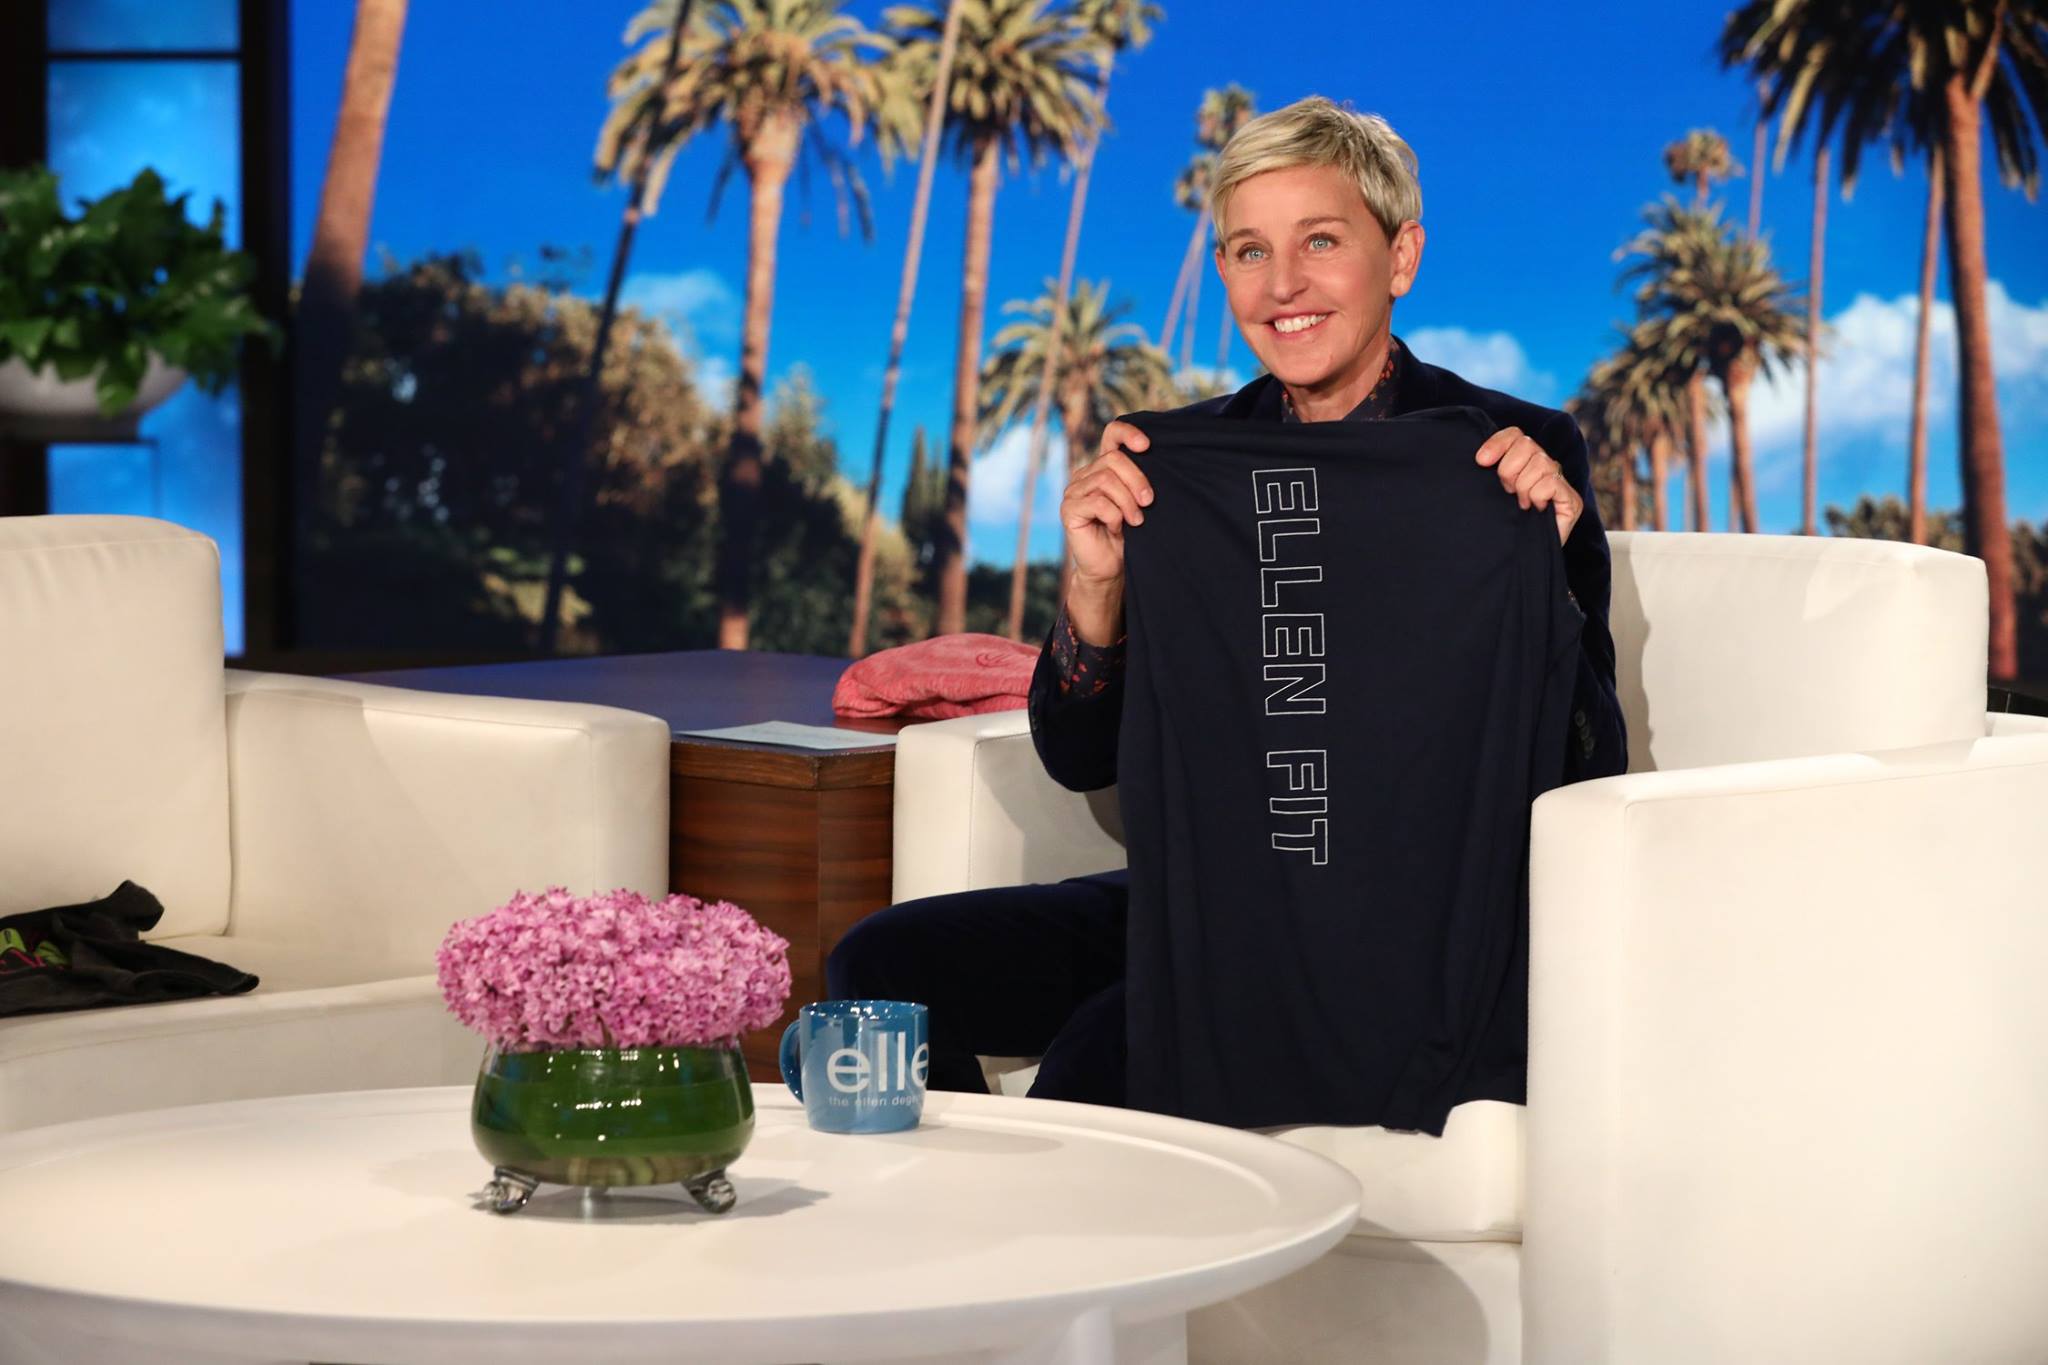 Ellen DeGeneres podría abandonar su show luego de que antiguos trabajadores denunciaran malas prácticas laborales en el show. (Foto Prensa Libre: Facebook @ellentv).